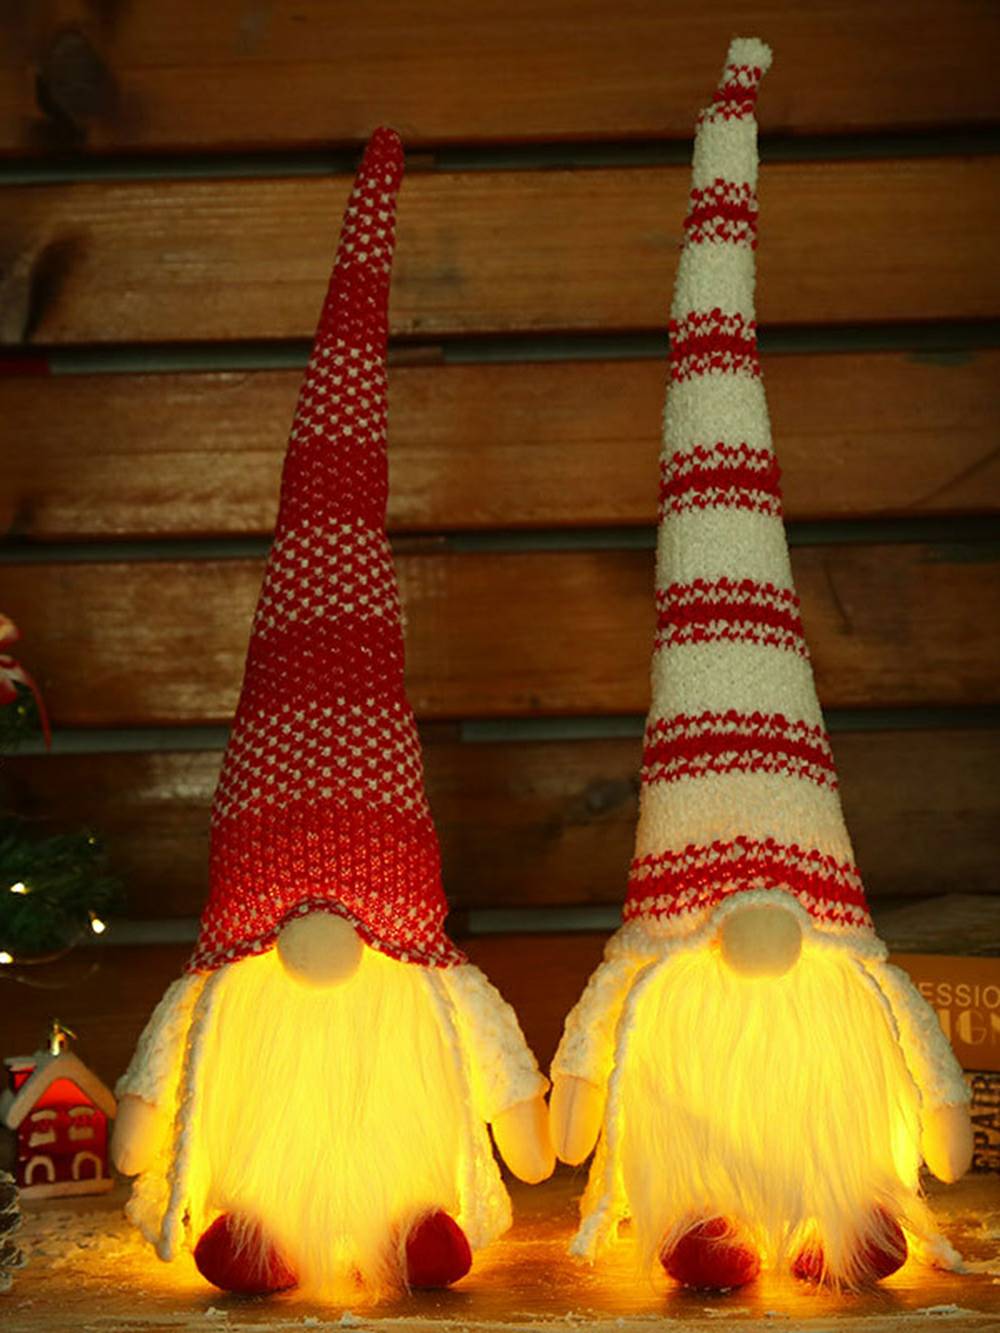 Kerst pluche rood en wit gestreepte lange hoed Rudolph Doll